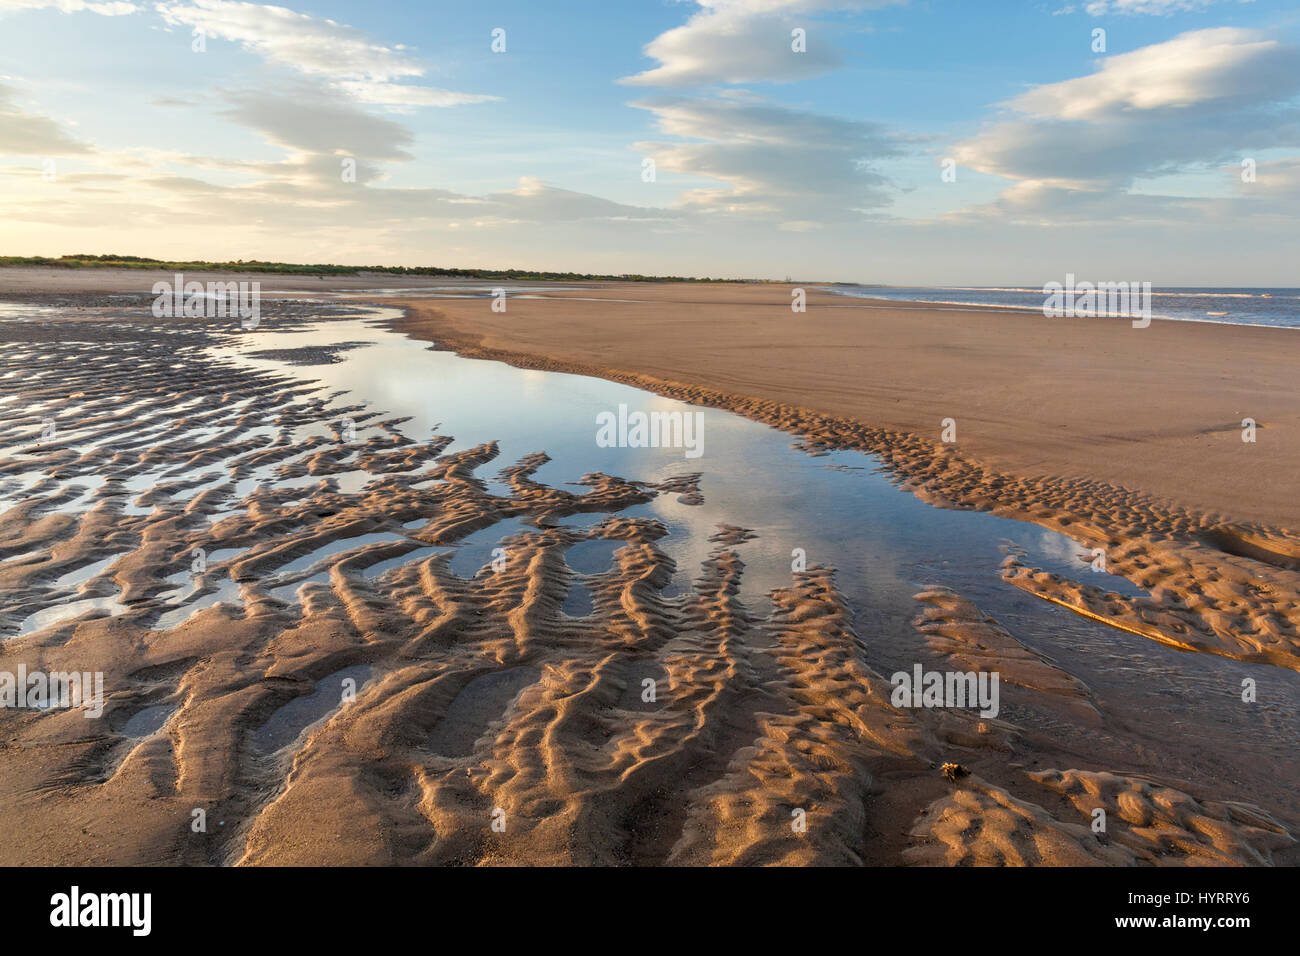 El paisaje costero con ondulaciones de arena formadas por la marea baja en la playa de Gibraltar, Lincolnshire, Inglaterra, Reino Unido. Foto de stock